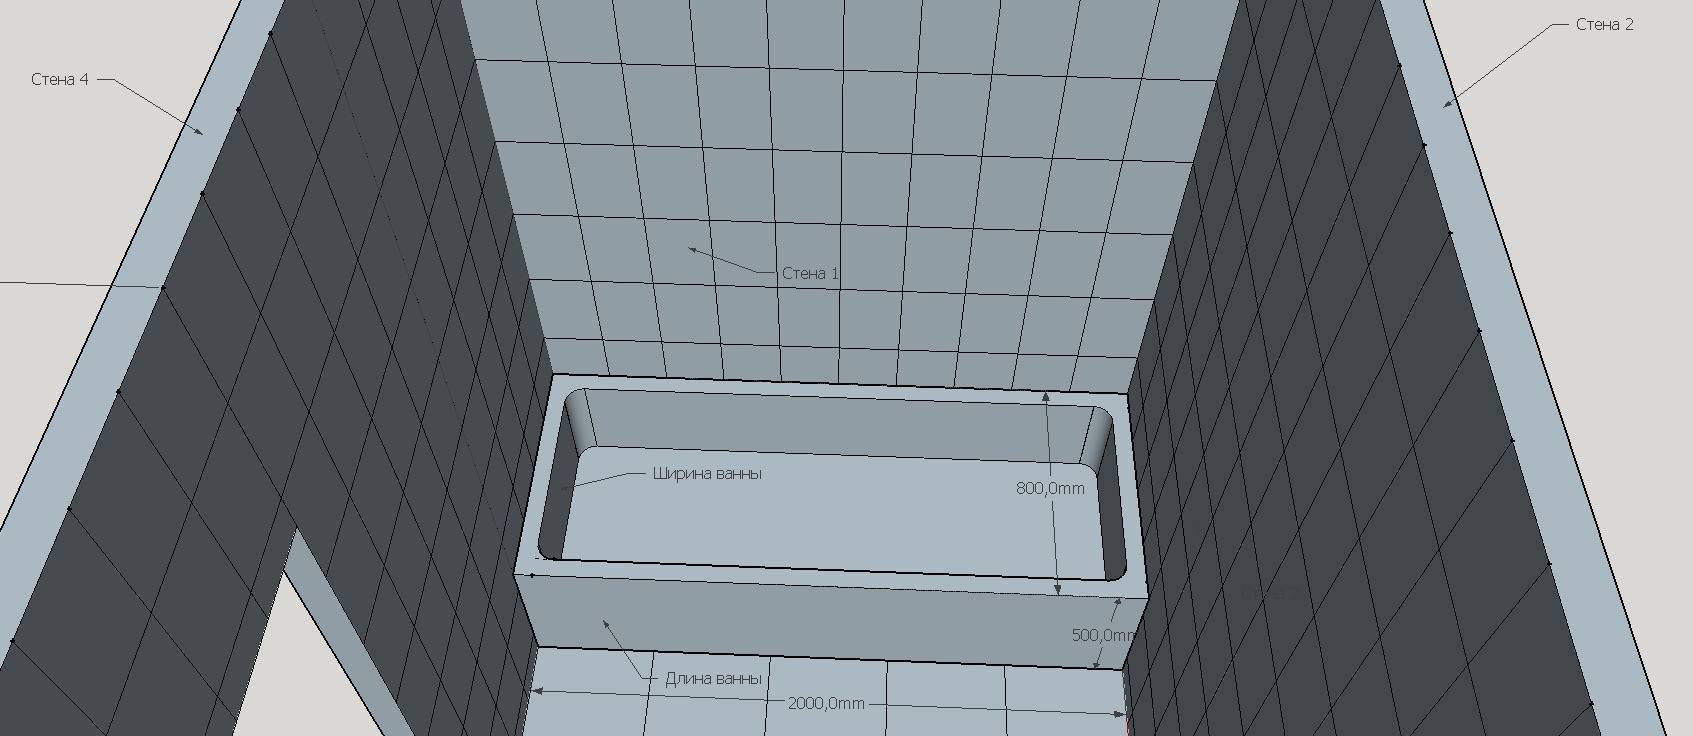 Удобный, онлайн калькулятор плитки для ванной